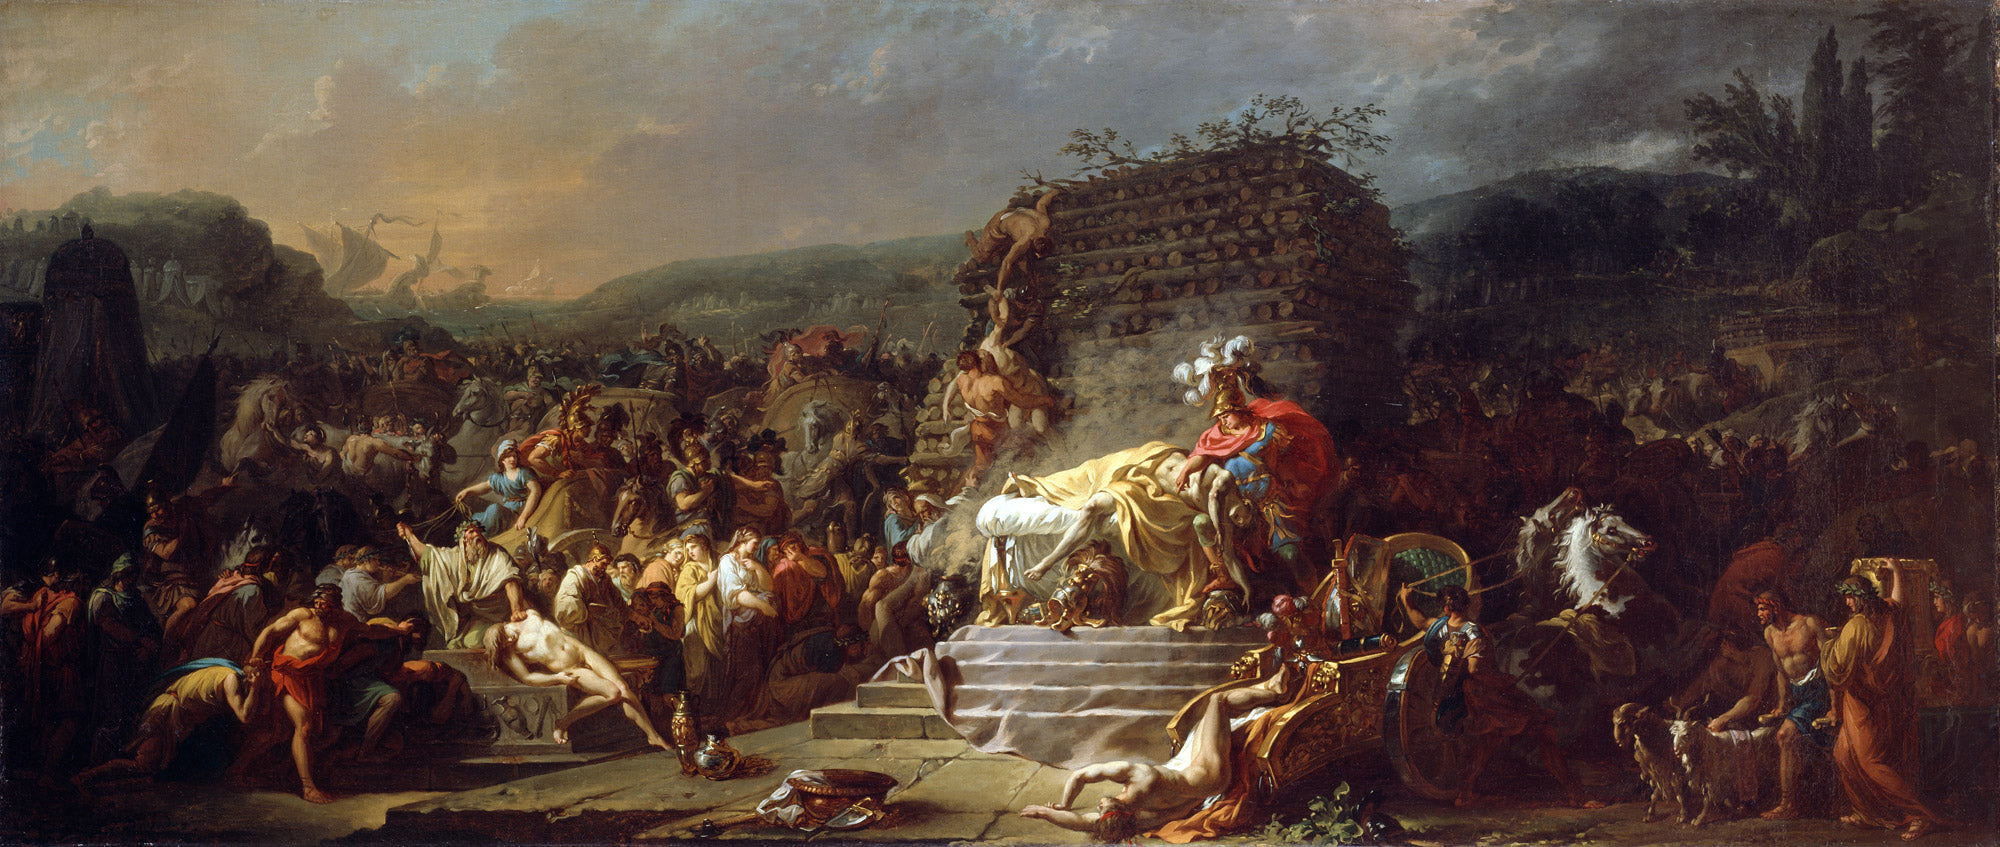 Les jeux funéraires de Patrocle - Jacques-Louis David